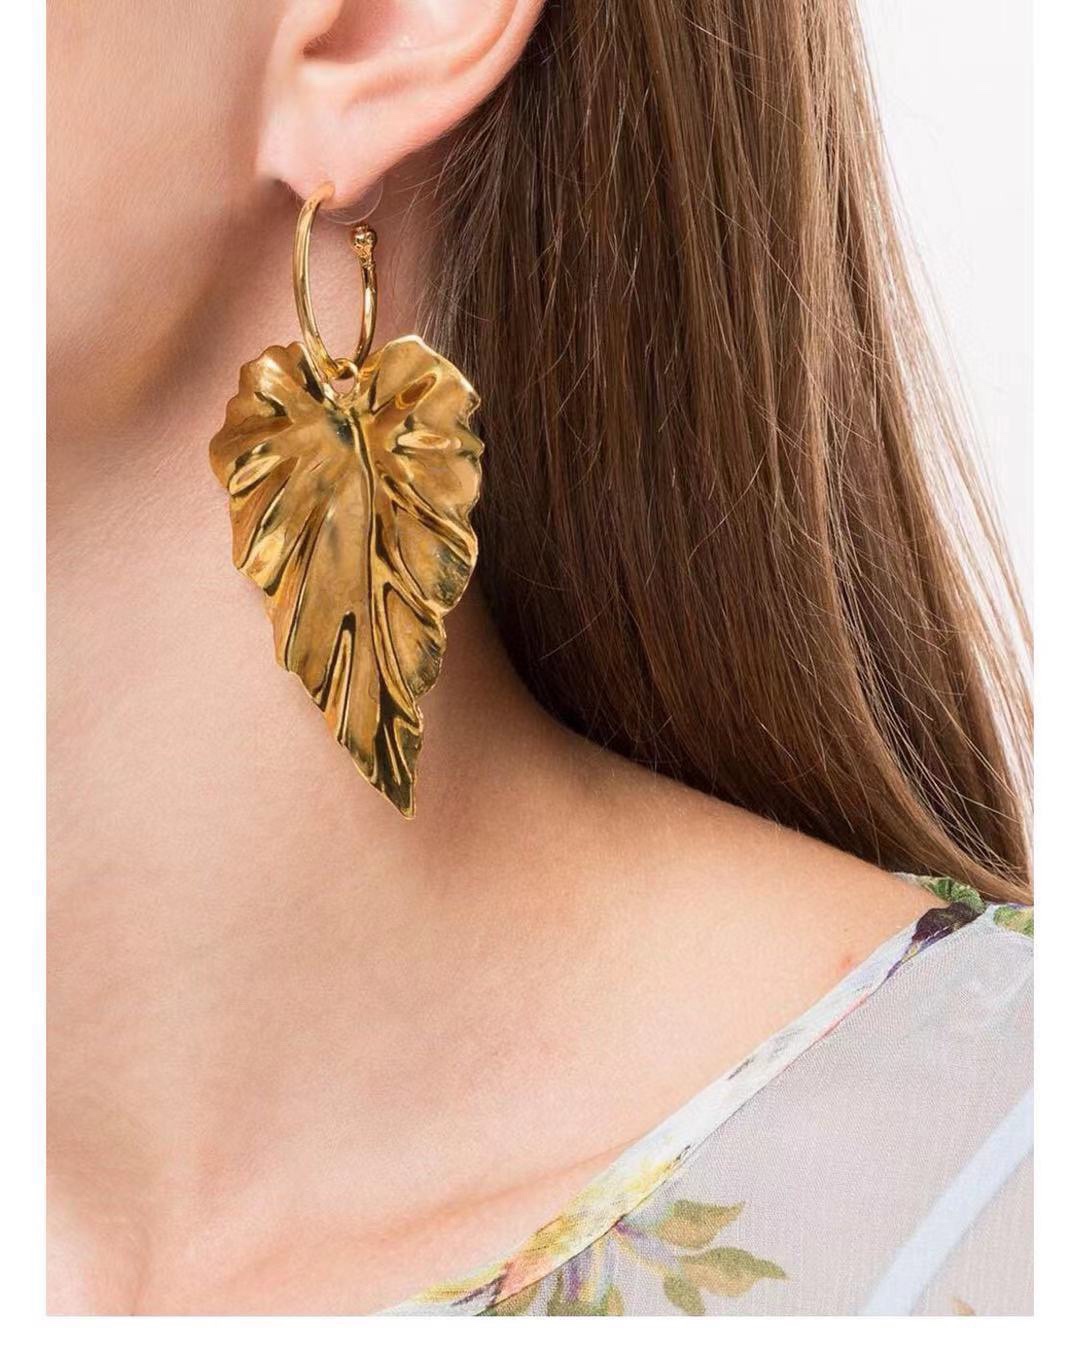 Jennifer Behr earrings